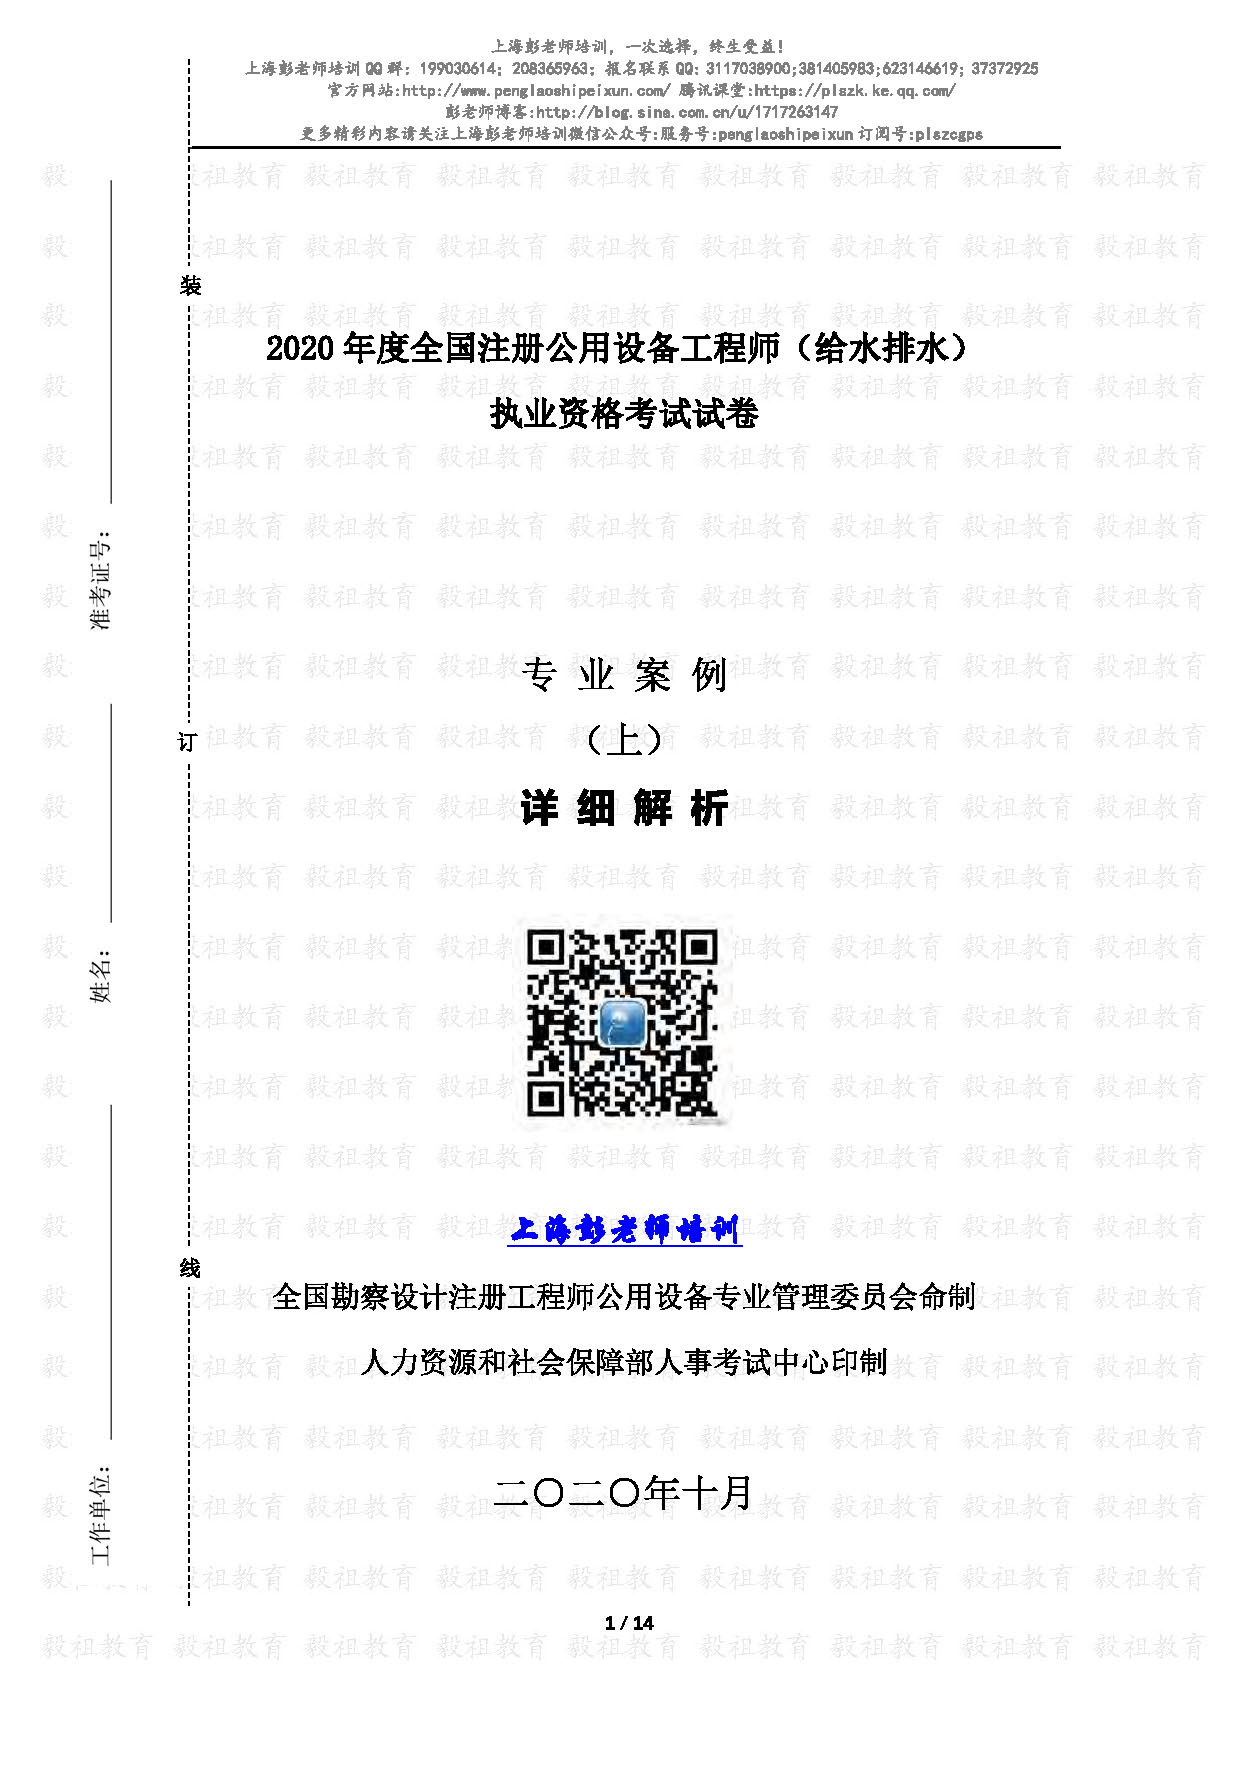 2020注册给排水专业案例真题(上午)详细解析-上海彭老师培训_页面_01.jpg